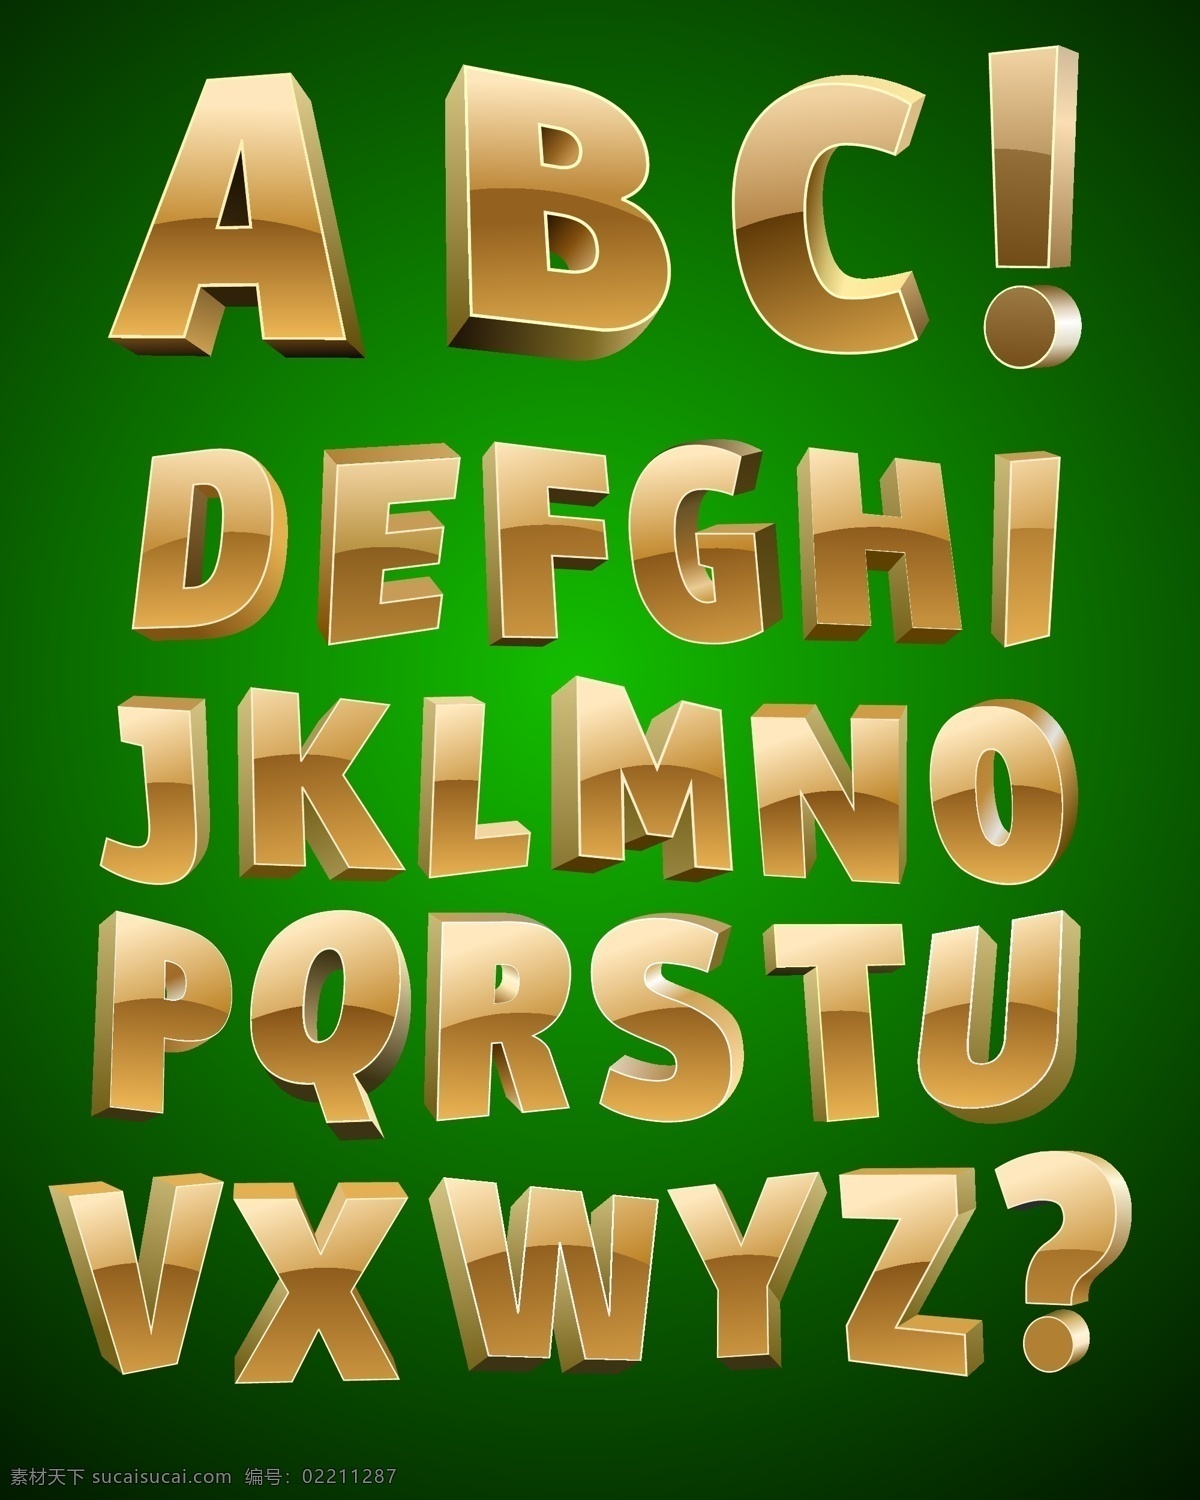 变形字母 创意字母 立体字母 拼音 其他设计 时尚字母 数字设计 艺术字母 金色3d字母 字母 英文 英文字体 英文艺术字 拼音字母 字母剪影 数字剪影 字母设计 英文签名 好看字母 潮流字母 设计字母 字母主题 矢量 矢量图